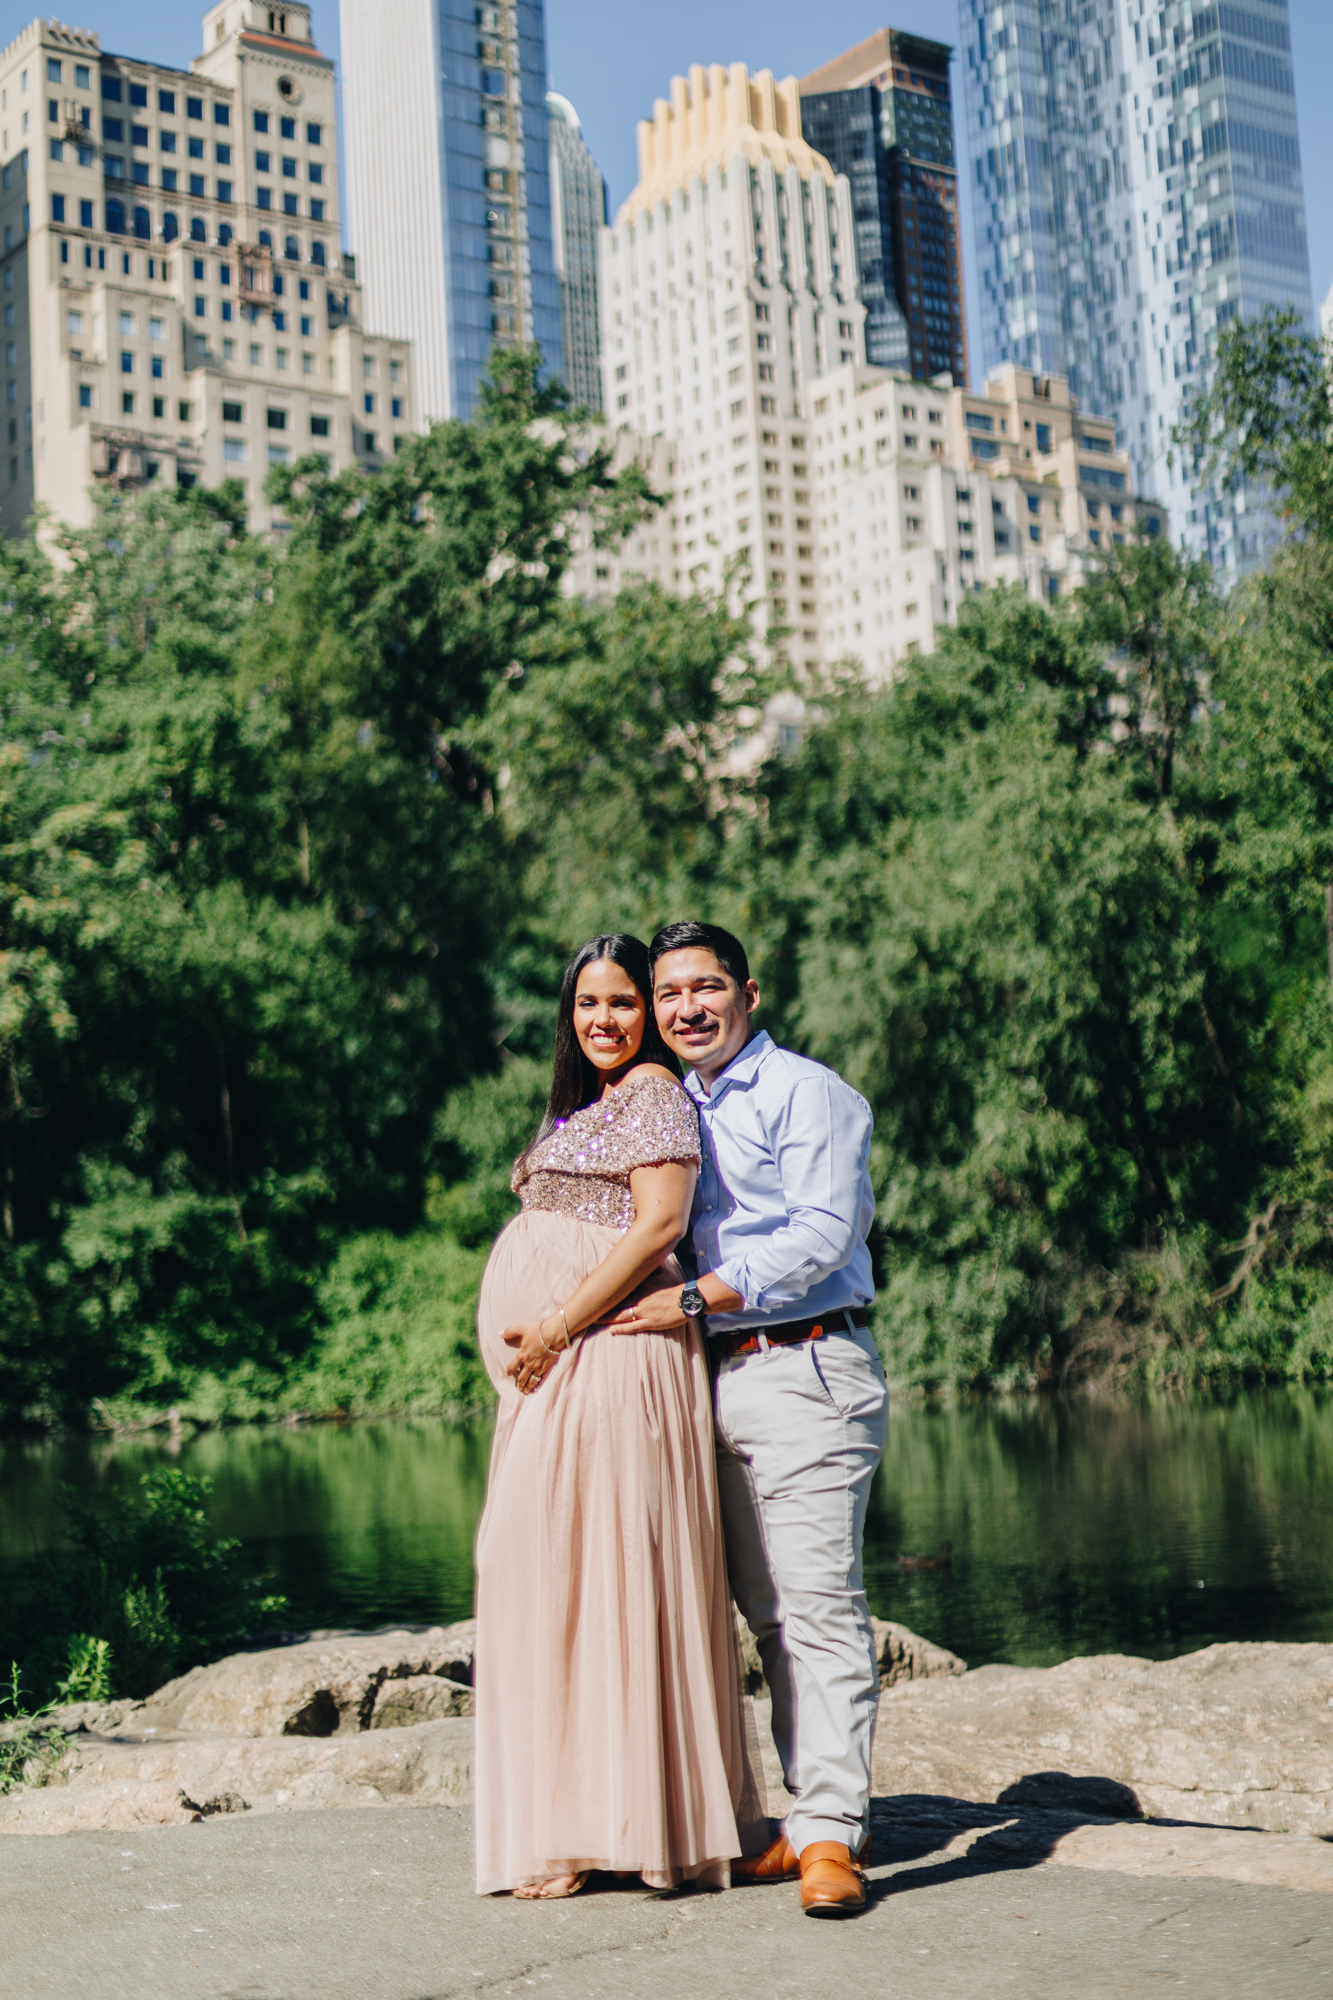 Radiant Central Park Maternity Photos